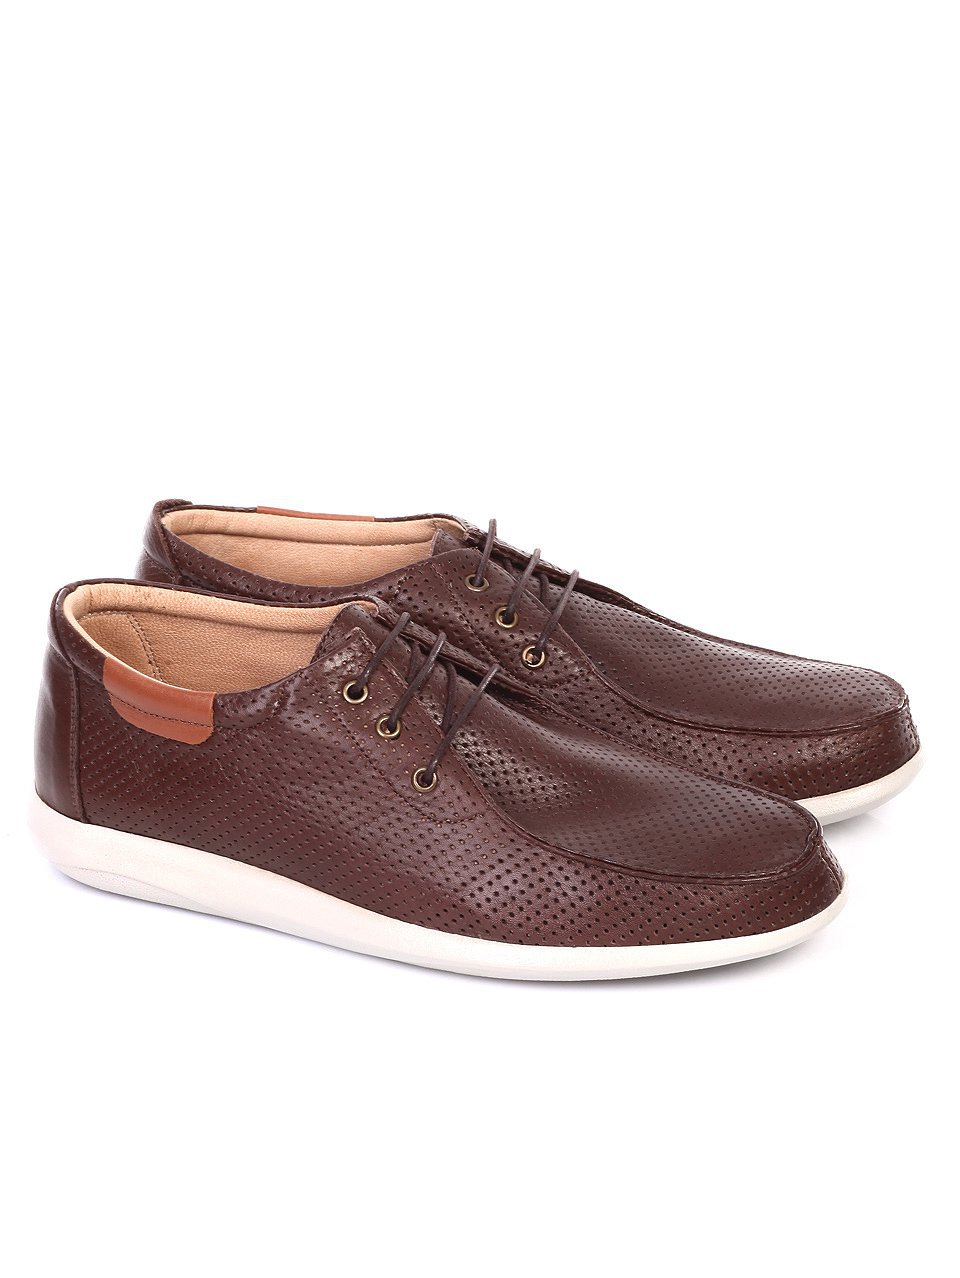 Елегантни мъжки обувки от естествена кожа в кафяво 7AT-18588 brown